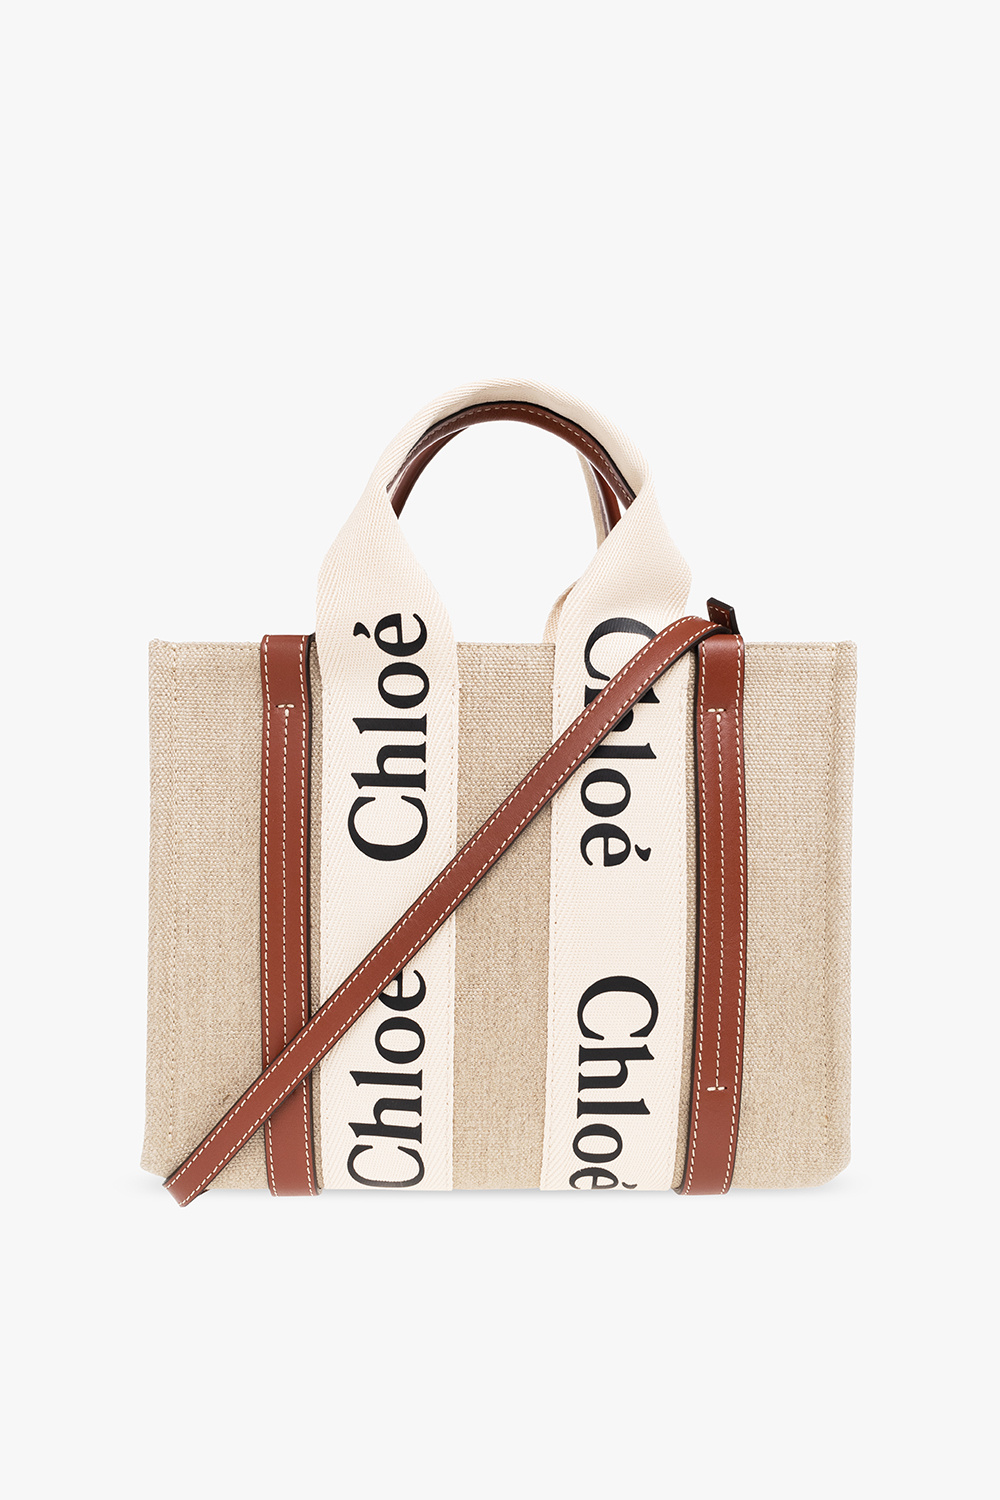 Chloé Handbags -  Canada